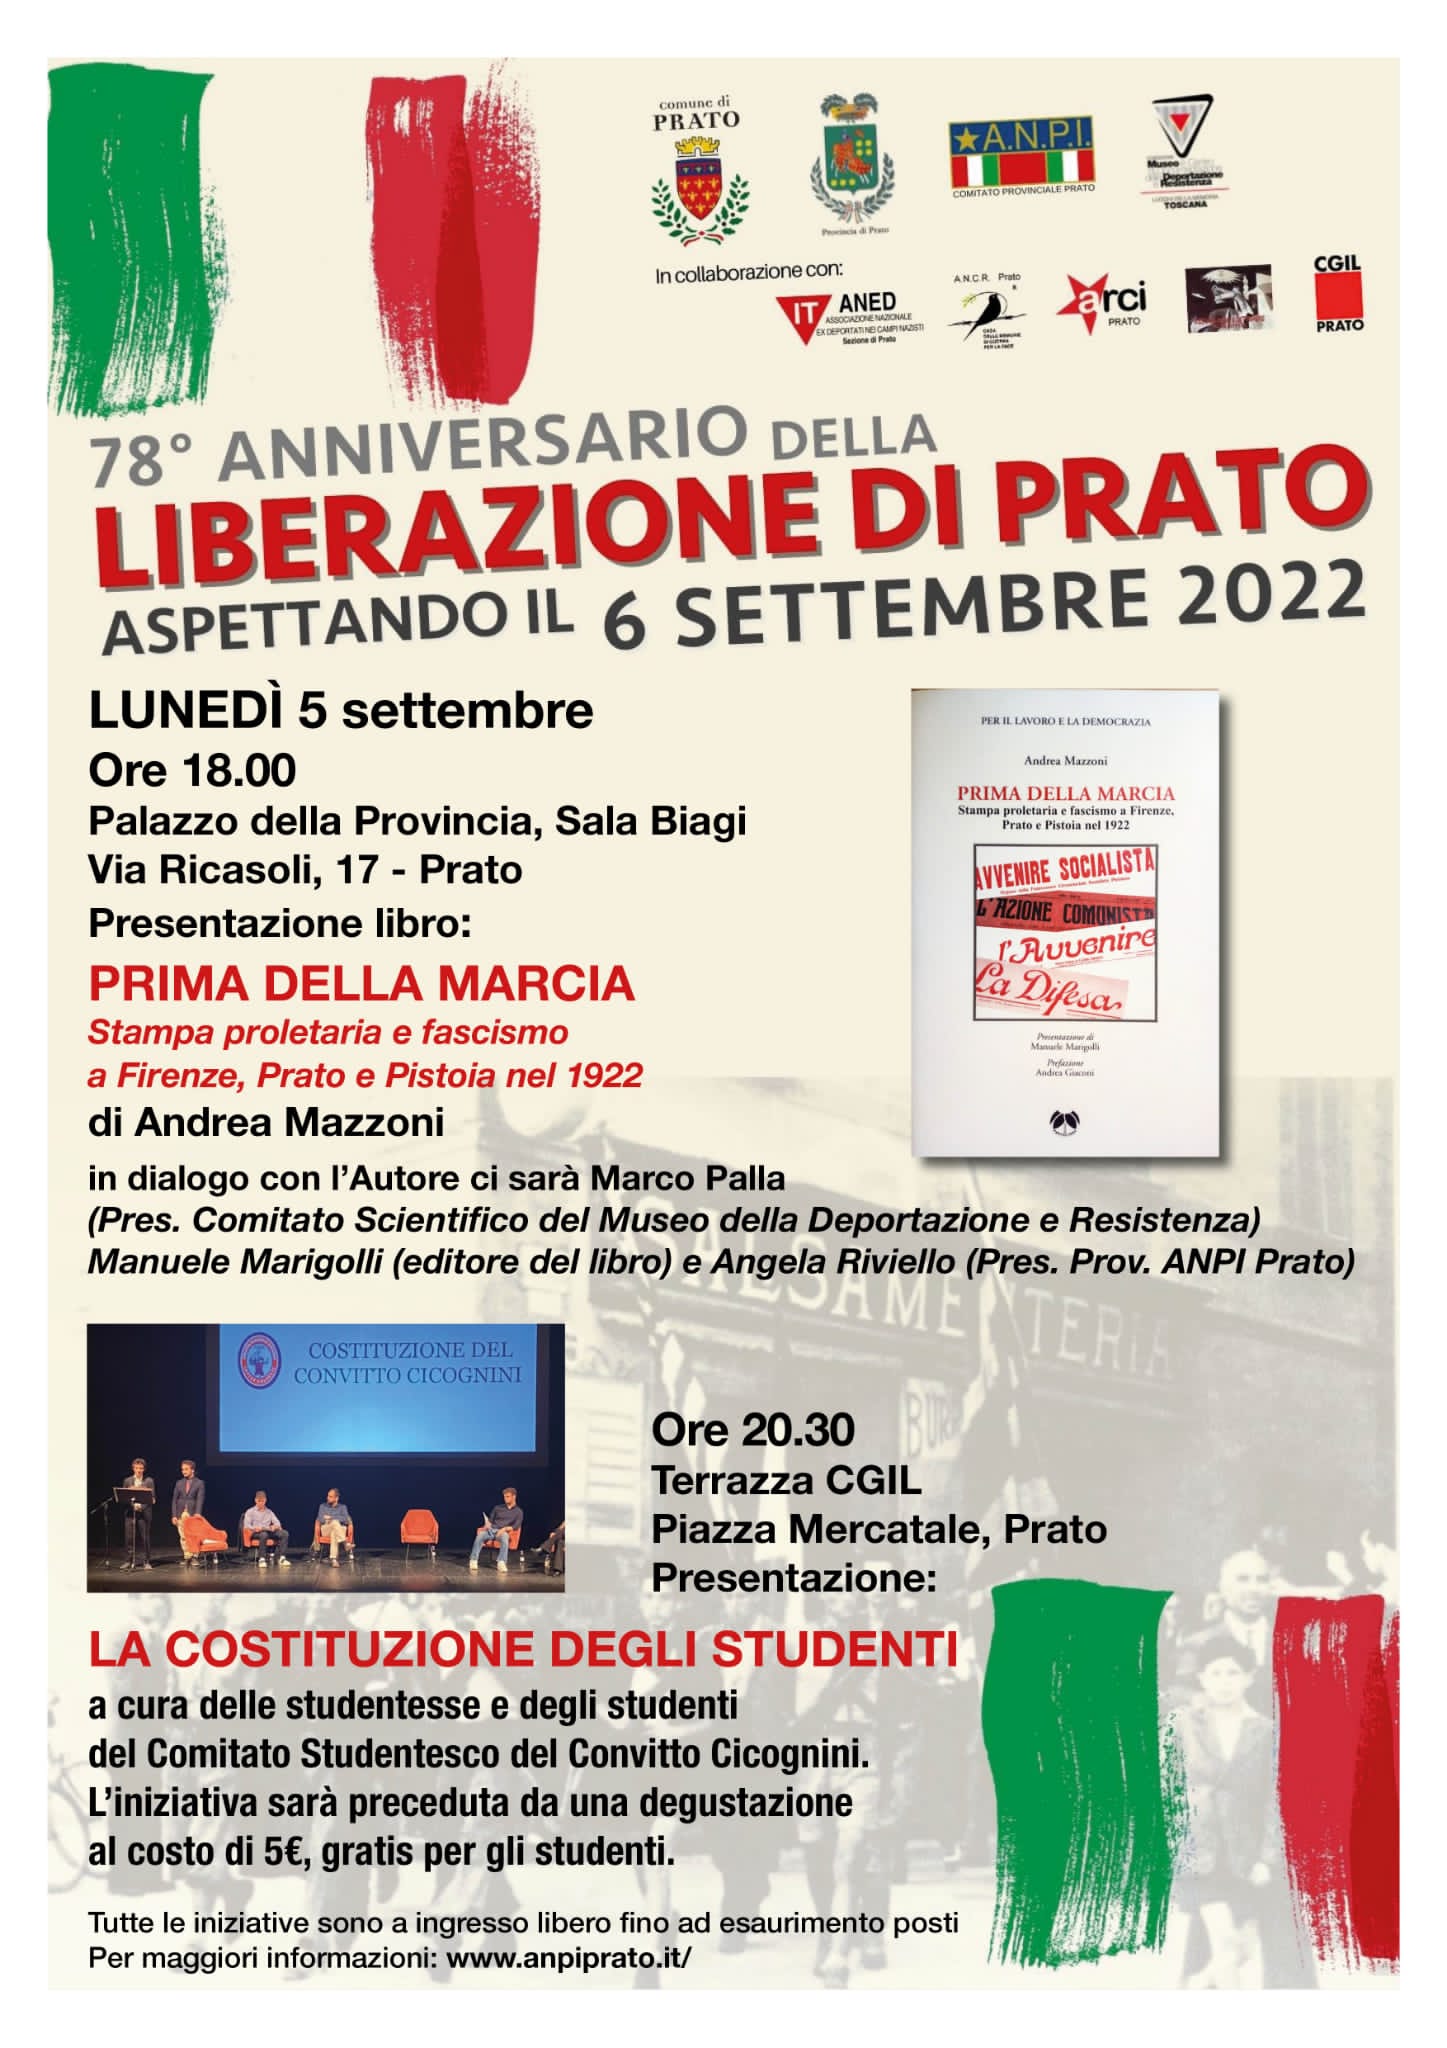 Festa della Liberazione di Prato, aspettando il 6 settembre: presentazione del libro “Prima della Marcia” di Andrea Mazzoni